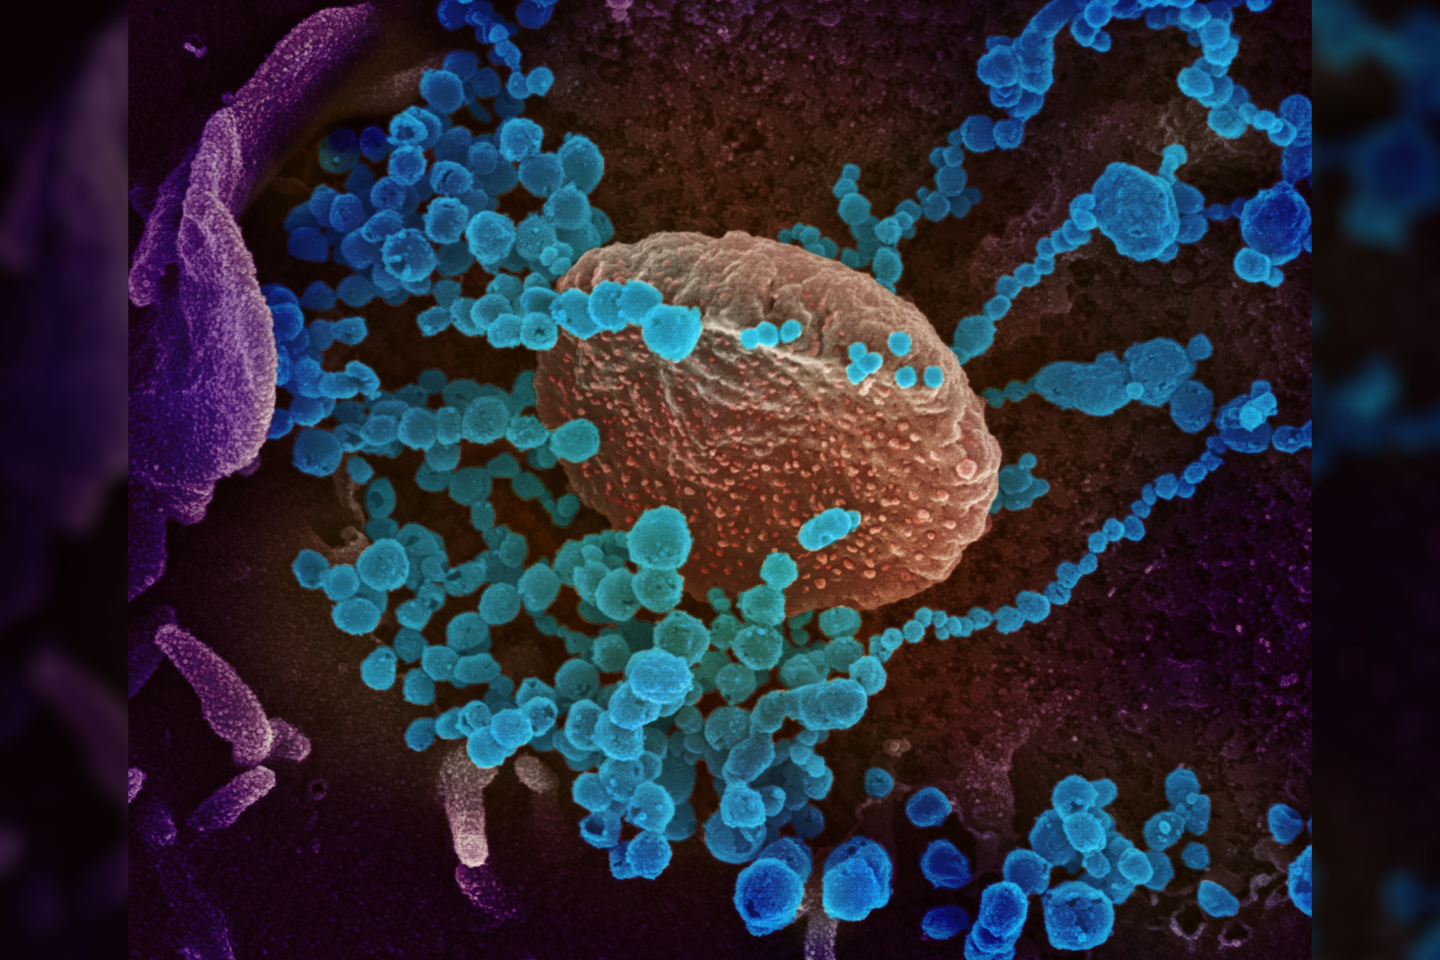  Šioje elektroniniu mikroskopu darytoje nuotraukoje matyti, SARS-CoV-2 (apvalūs mėlynos spalvos objektai) ant laboratorijoje užaugintų ląstelių paviršiaus.<br> NIAID nuotr.